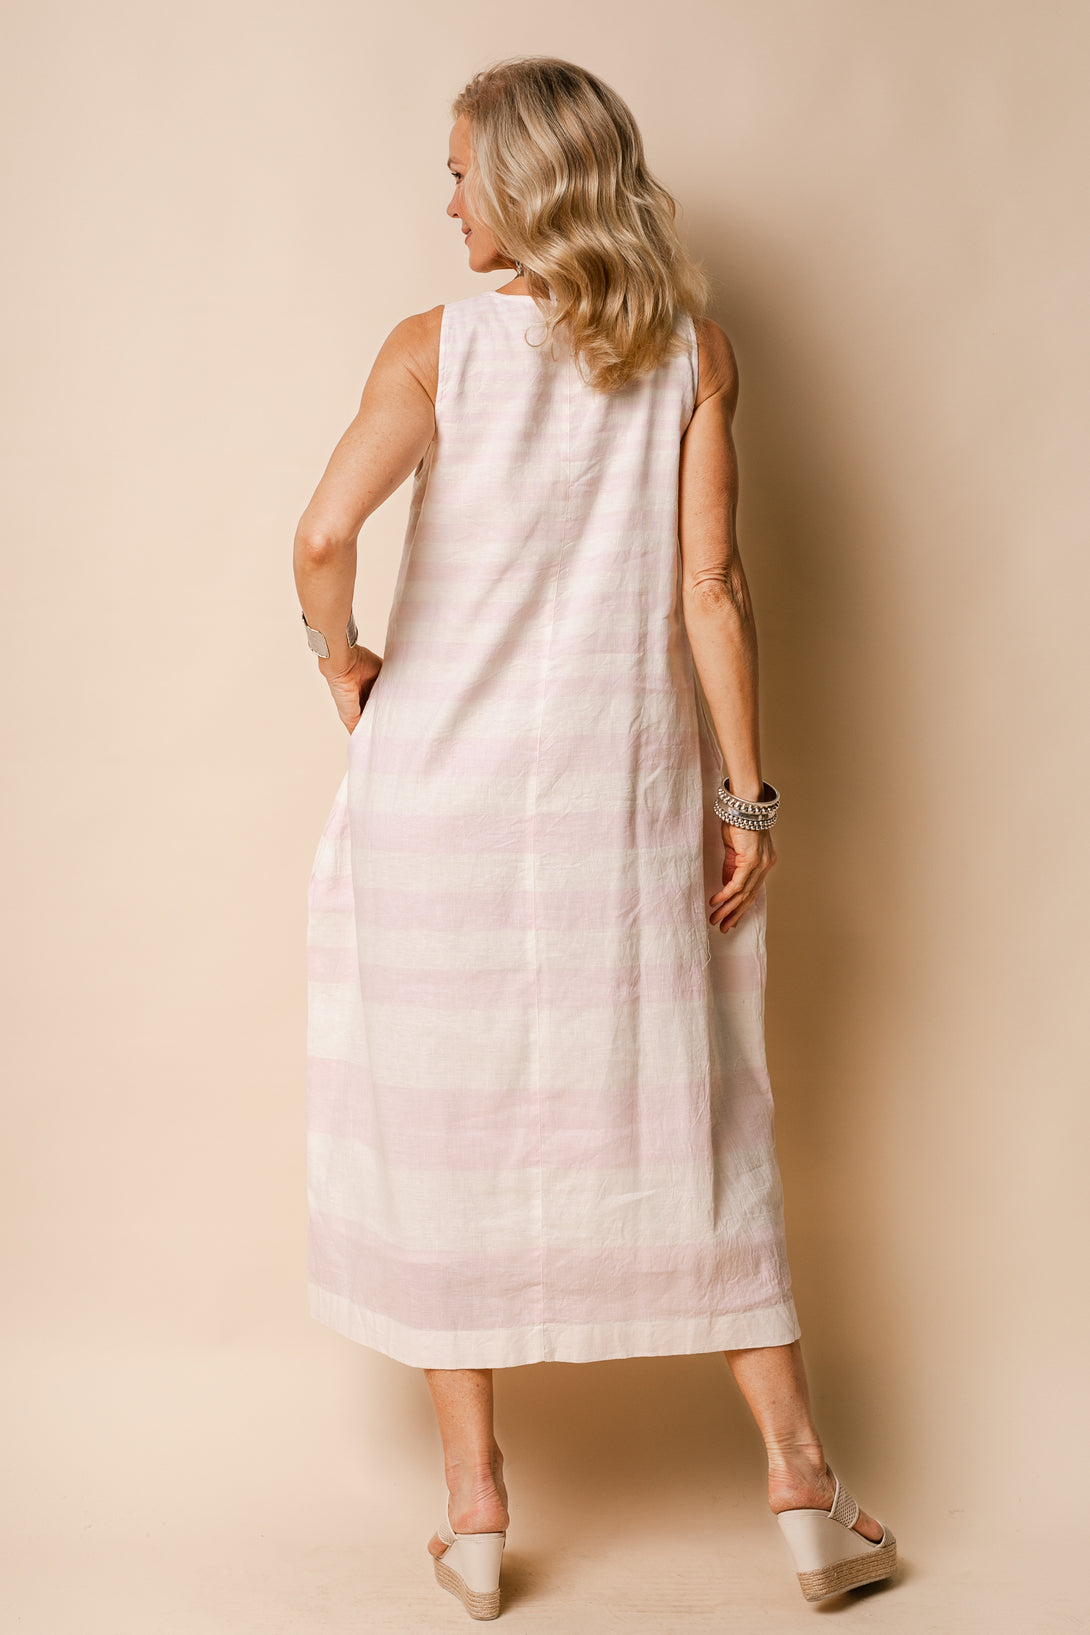 Joplin Linen Blend Dress in Blush - Imagine Fashion